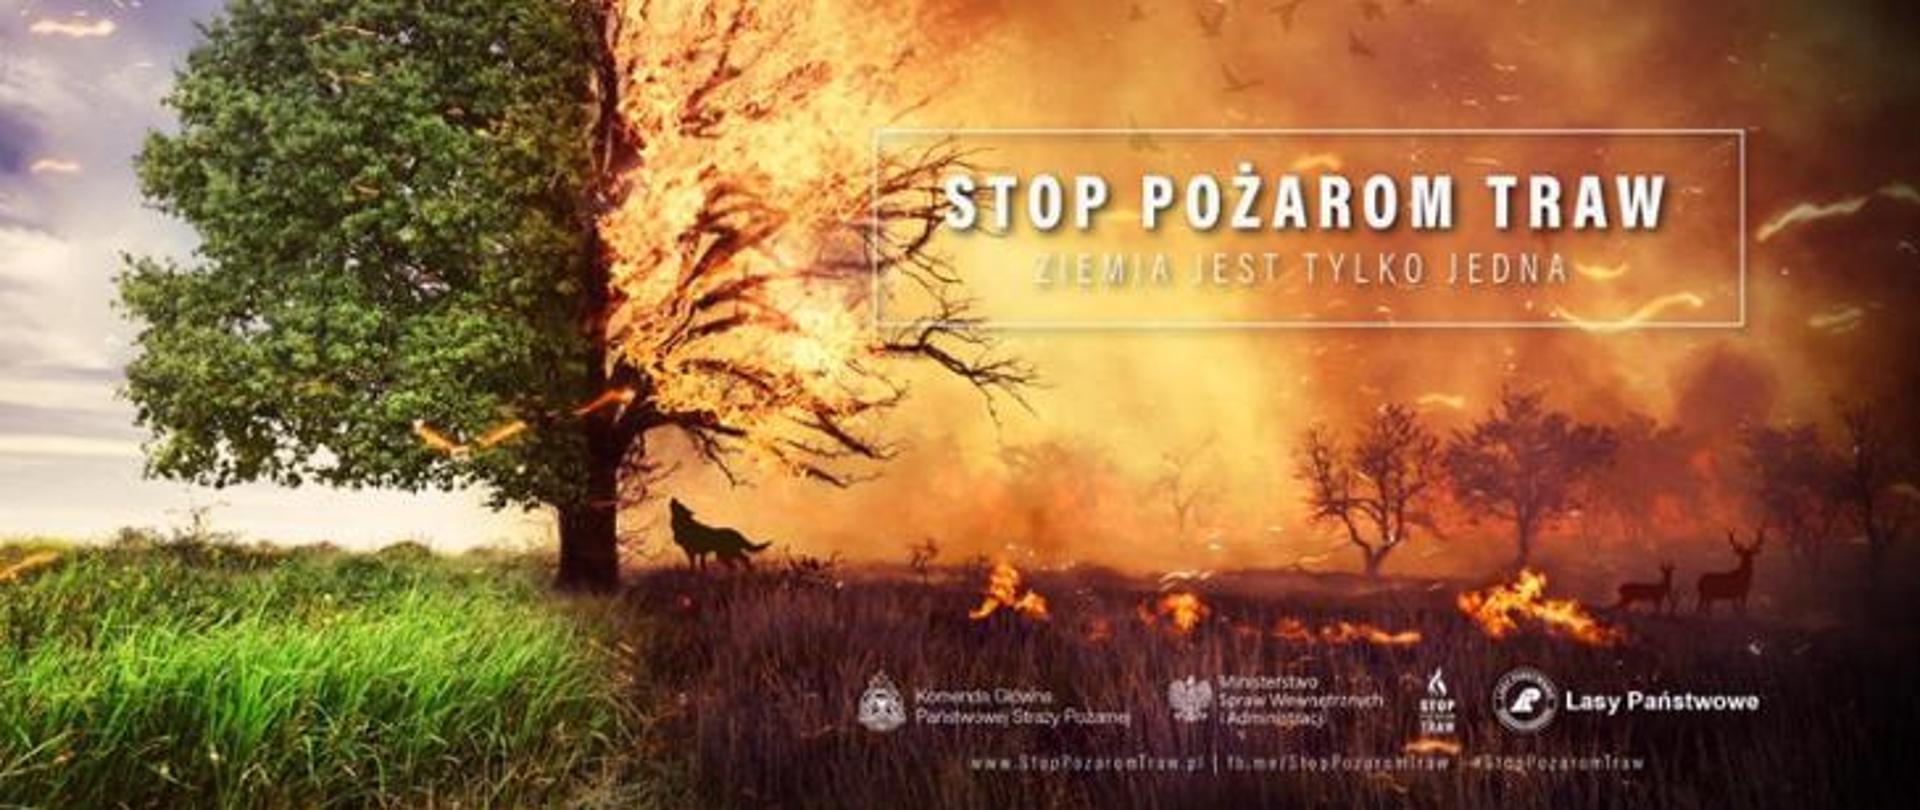 Plakat Kampani "Stop pożarom traw" z dopiskiem ziemia jest tylko jedna